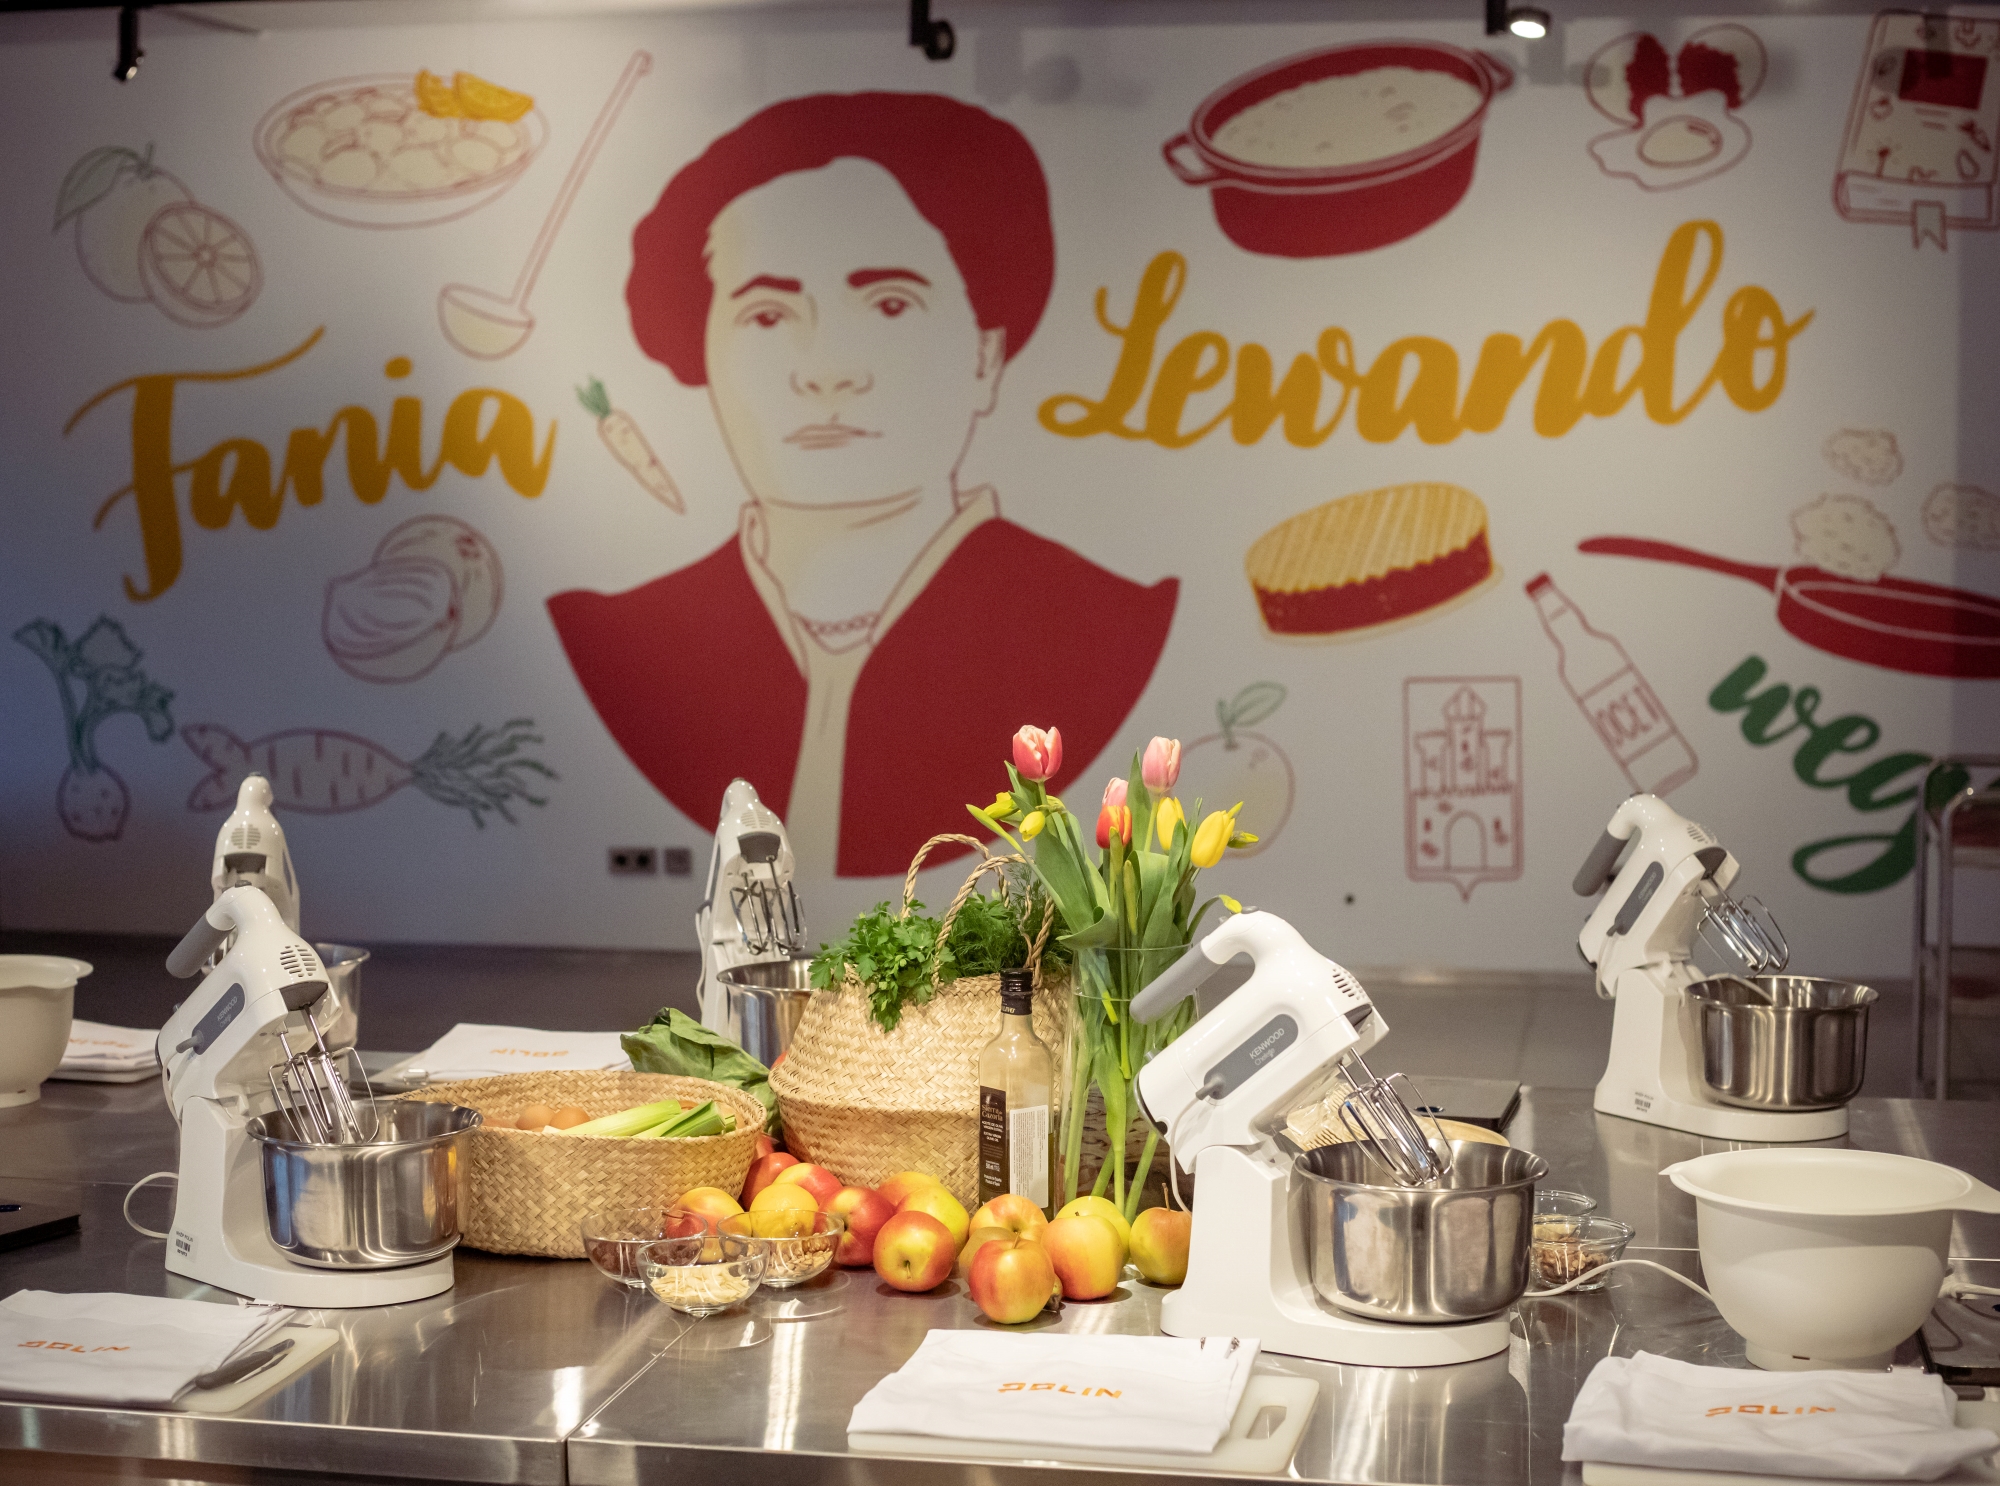 Na stole w pracowni kulinarnej "u Fani" leżą jabłka, stoją garnki i miksery oraz kwiaty w wazonie. W tle mural z podobizną Fani Lewando.